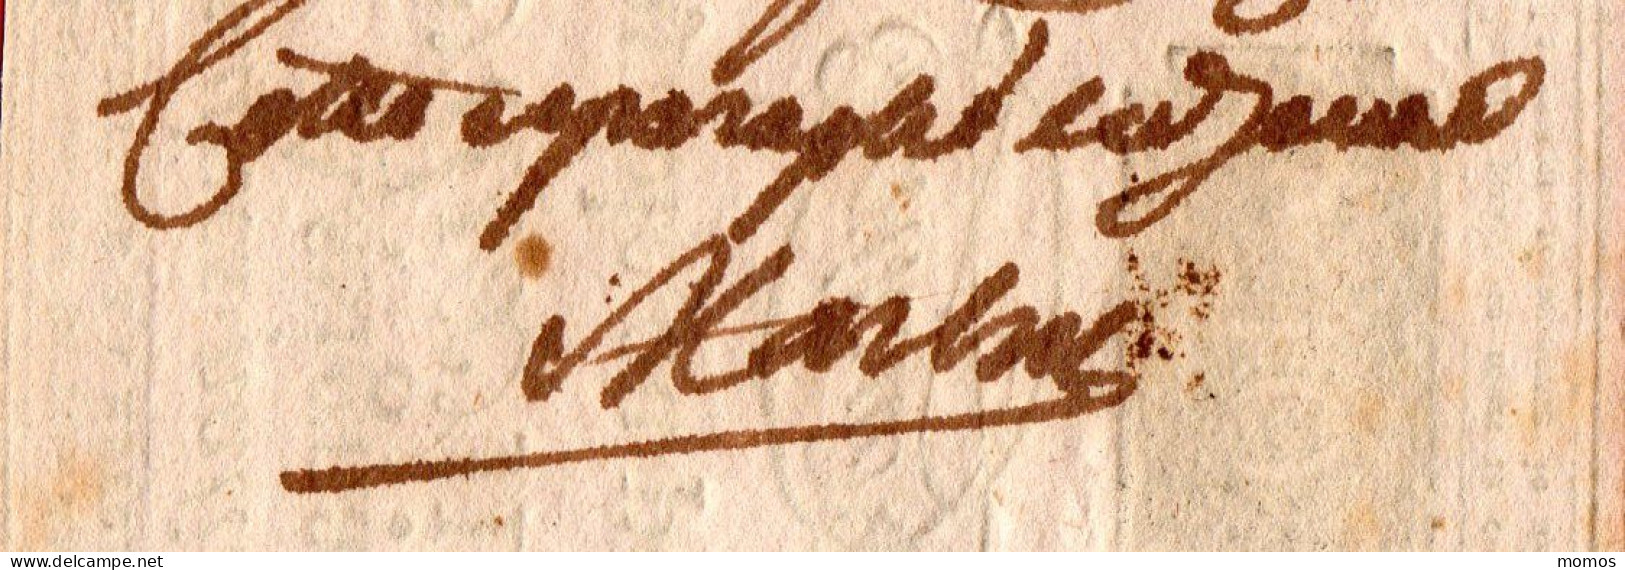 ASSIGNAT FAUX 10 LIVRES - 24 OCTOBRE 1792 - CERTIFIE FAUX + ANNOTATIONS MANUSCRITES D'EPOQUE REVOLUTIONNAIRE - Assegnati